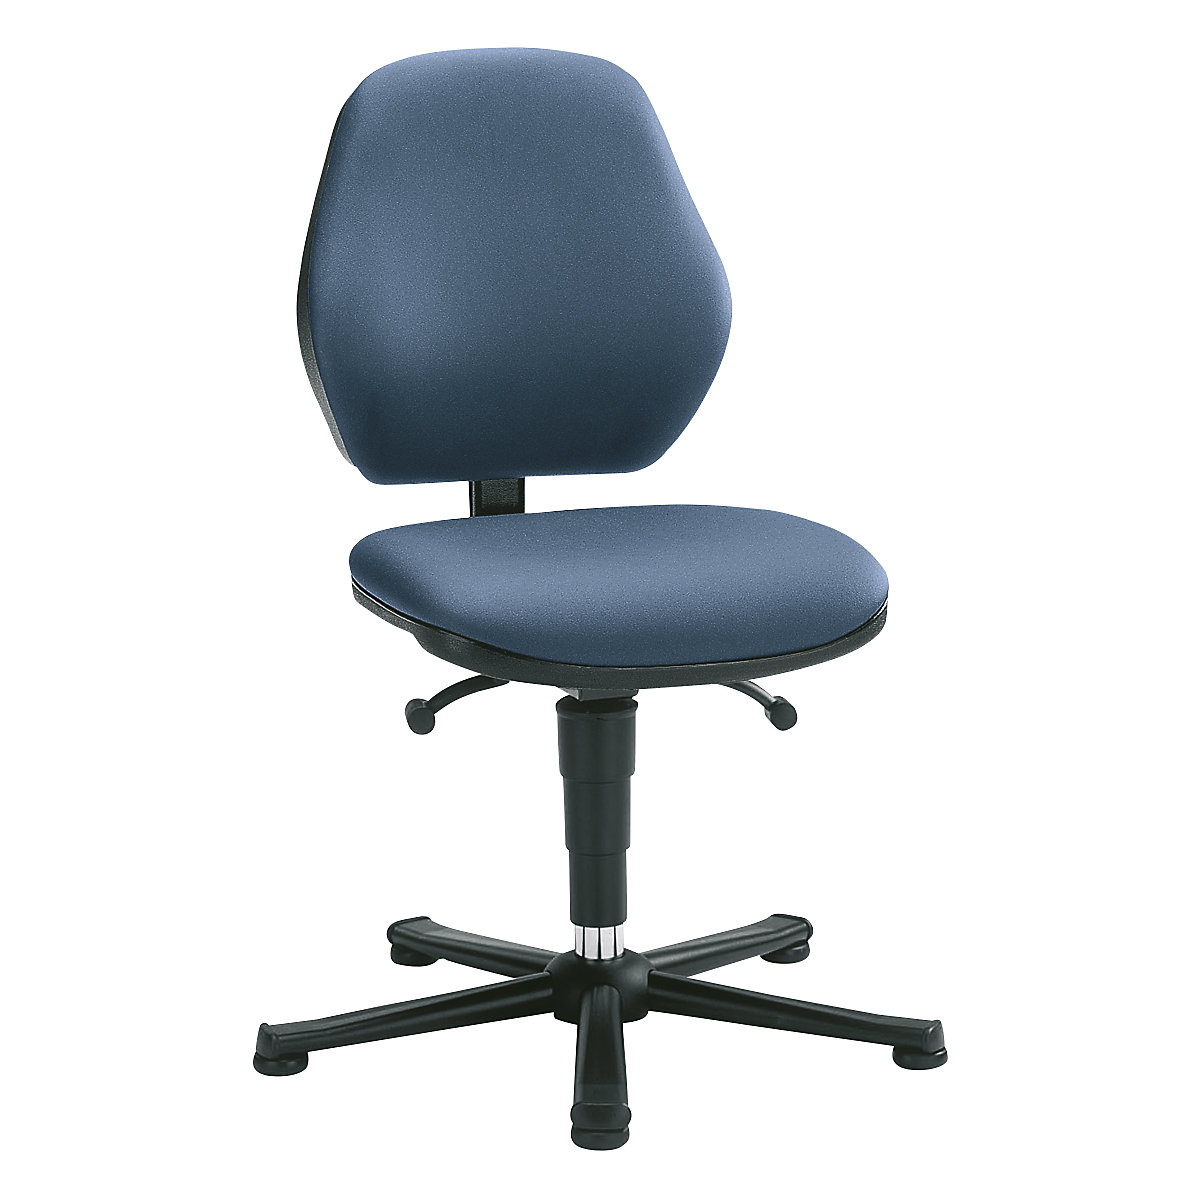 Pracovní židle – bimos, permanentní kontakt, s patkami, koženkový potah-2